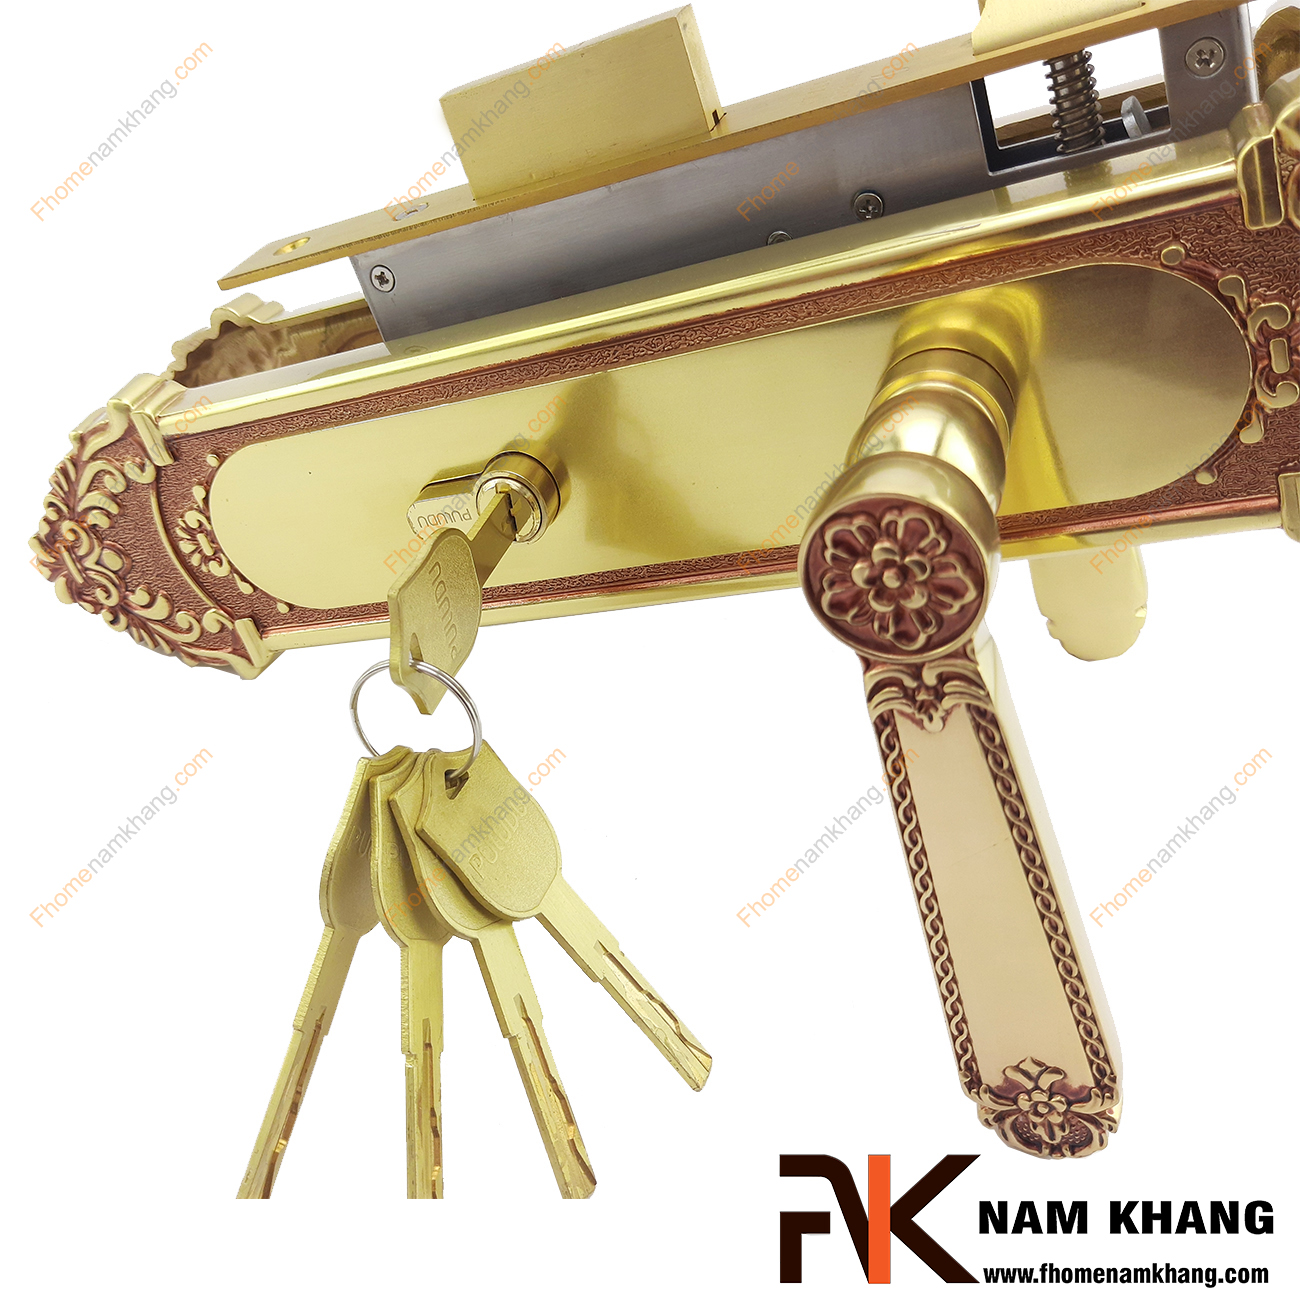 Khóa cửa chính cổ điển bằng đồng NK179L-RC là bộ khóa cửa dành chi các dạng cửa chính lớn, cao cấp, cửa 2 cánh hoặc 4 cánh.